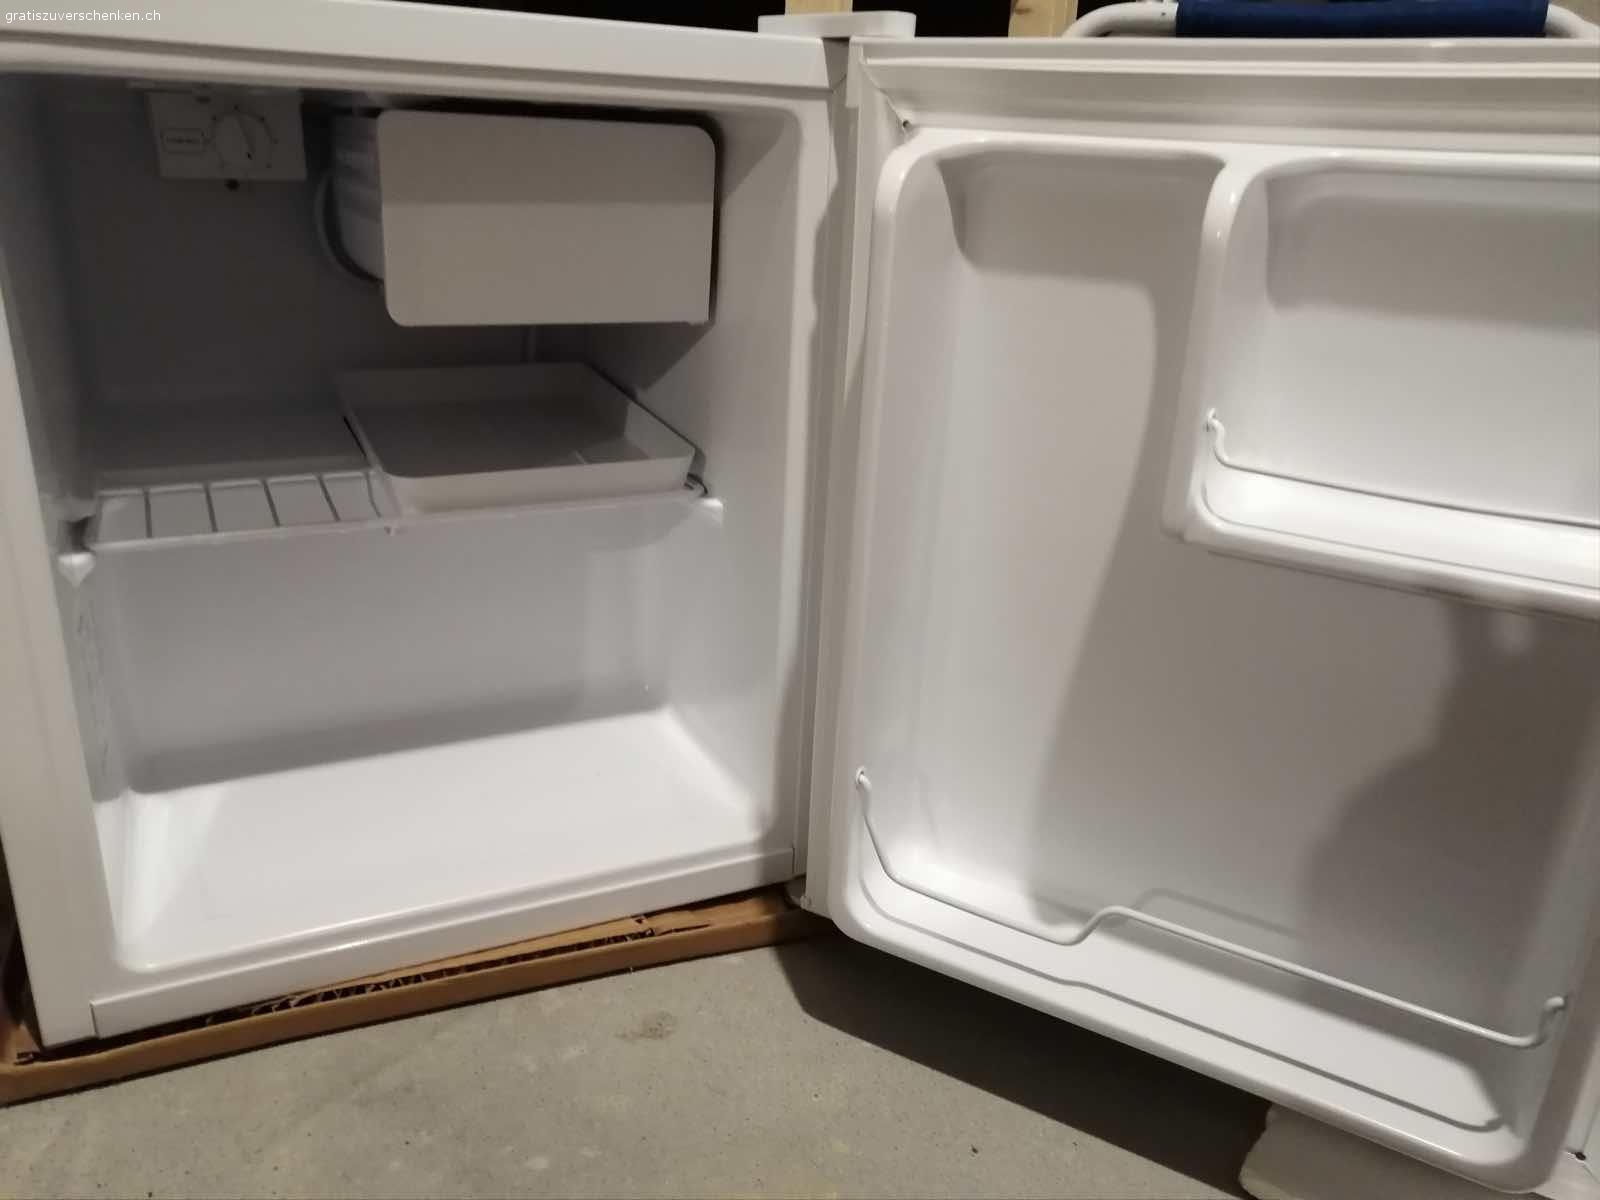 Kleiner Kühlschrank - Haushalt - Gratis zu verschenken